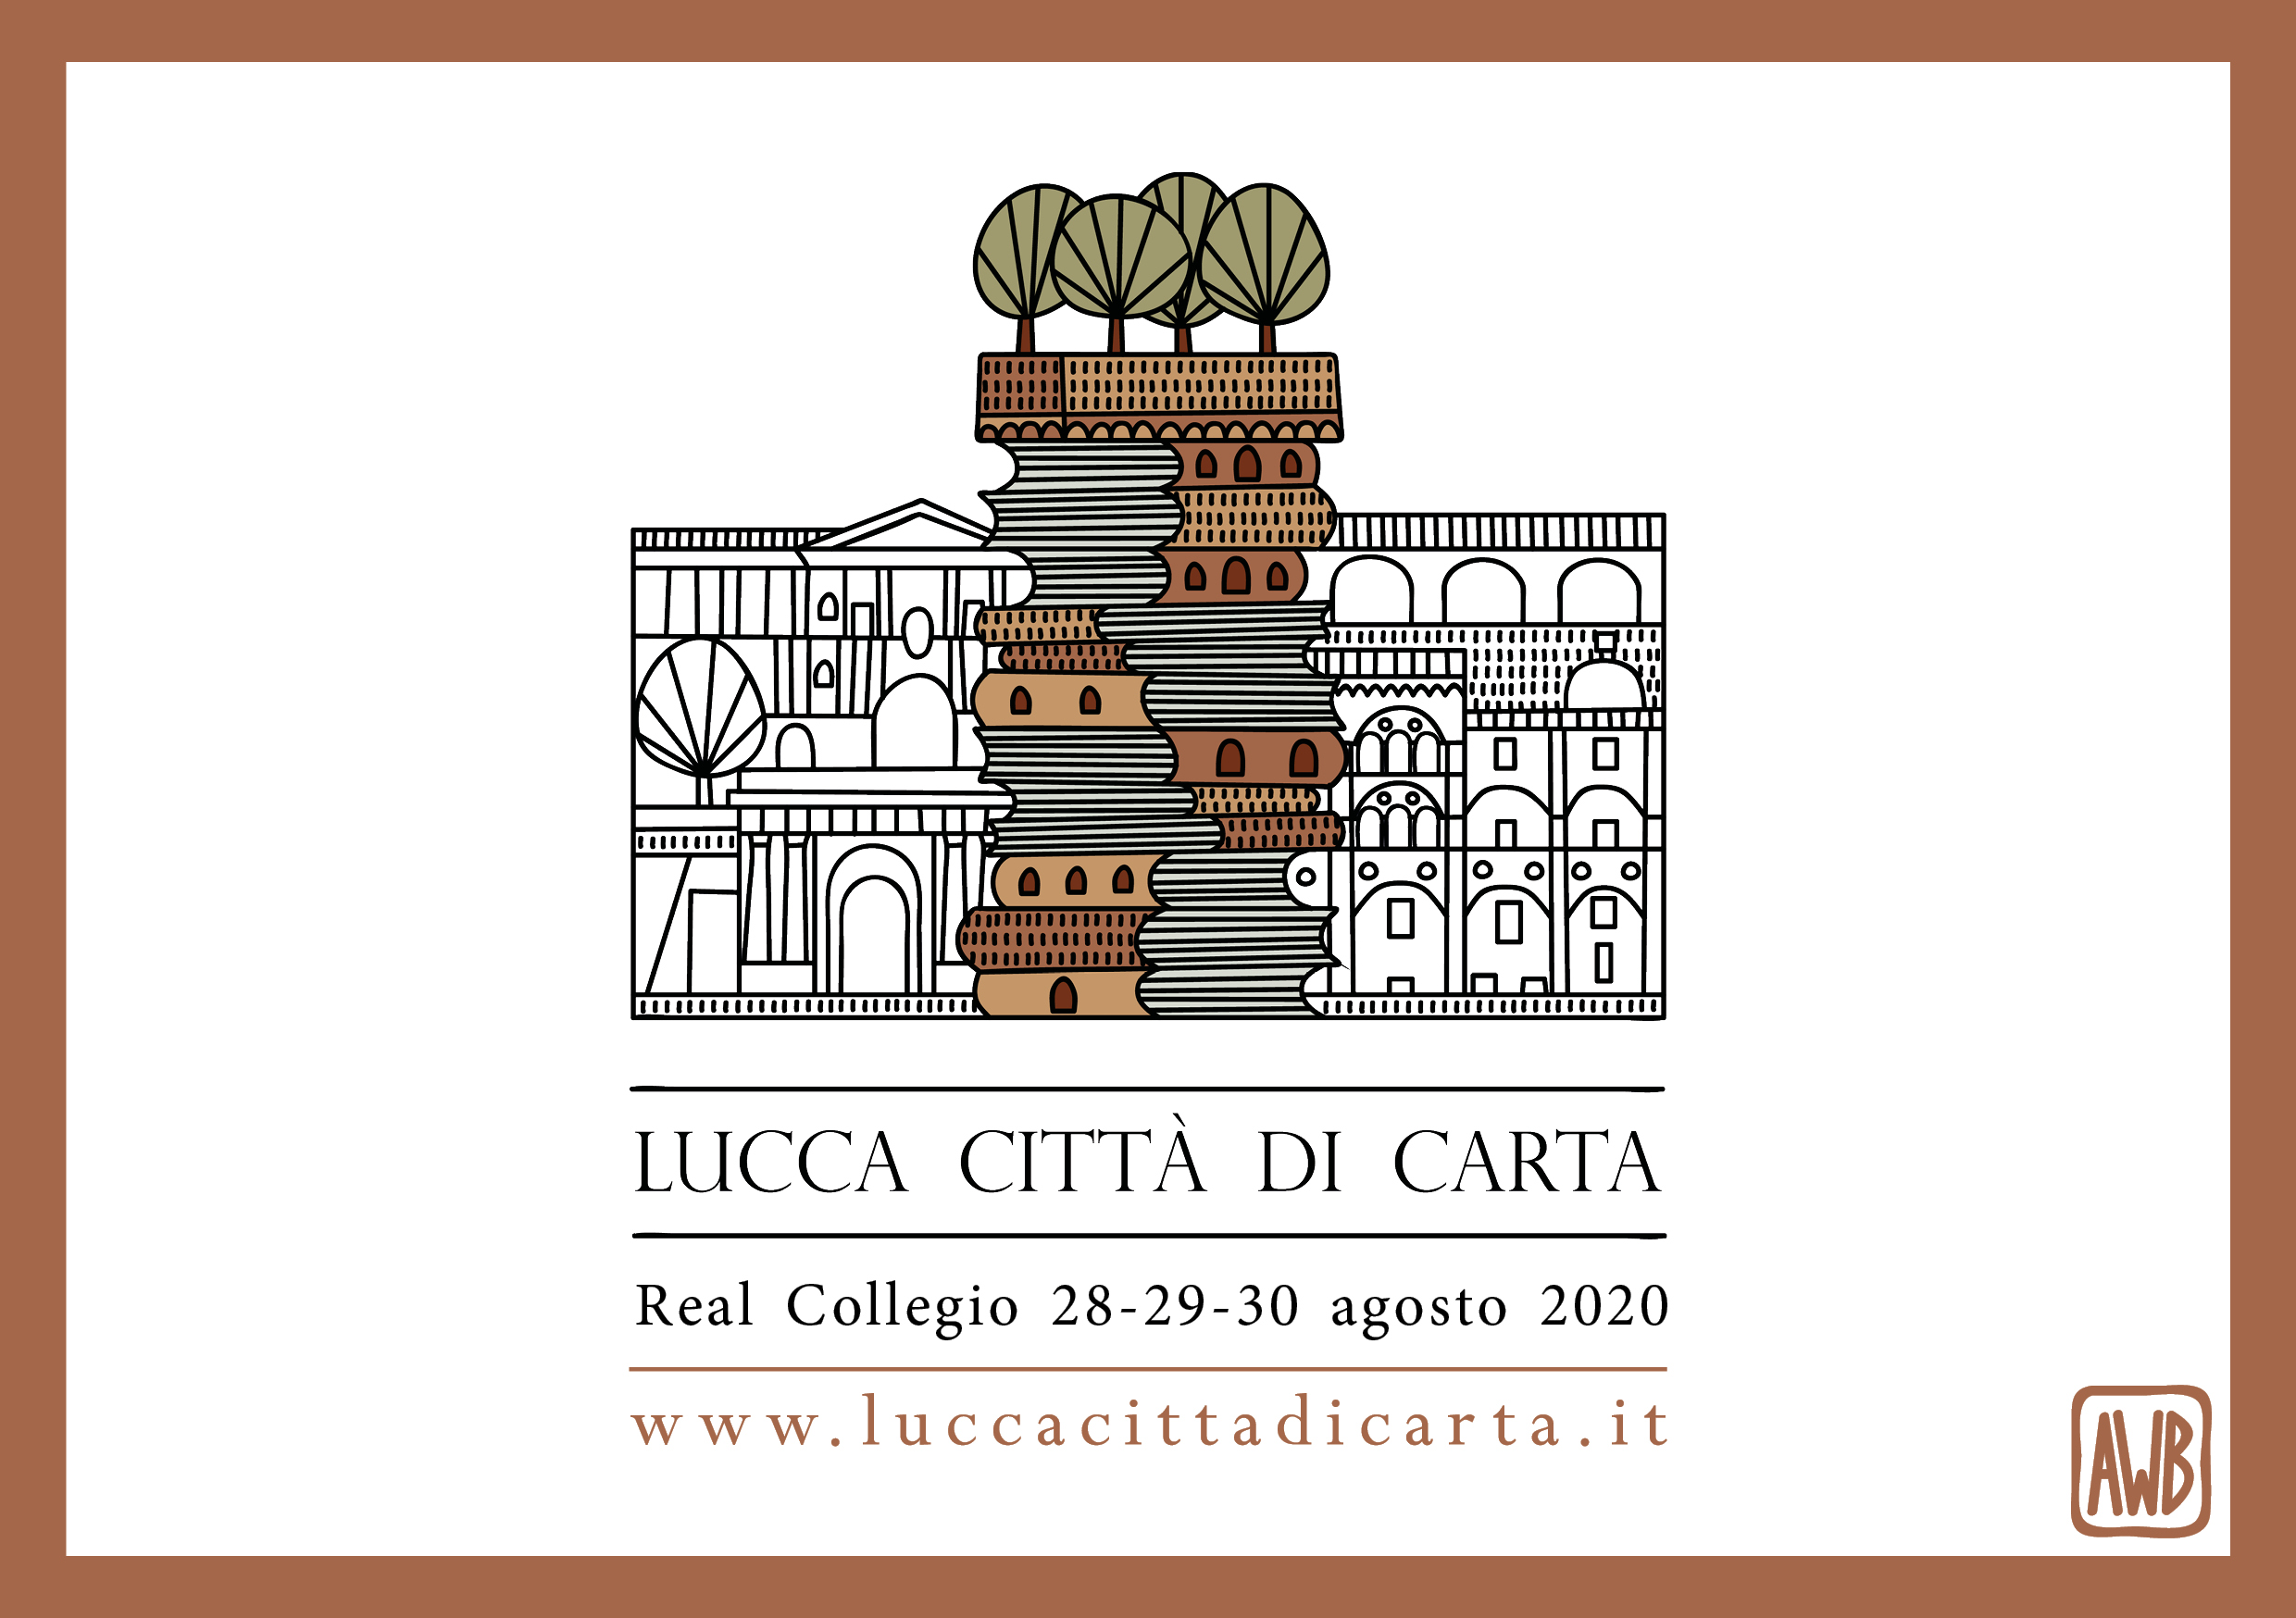 Arriva il festival Lucca Città di Carta 